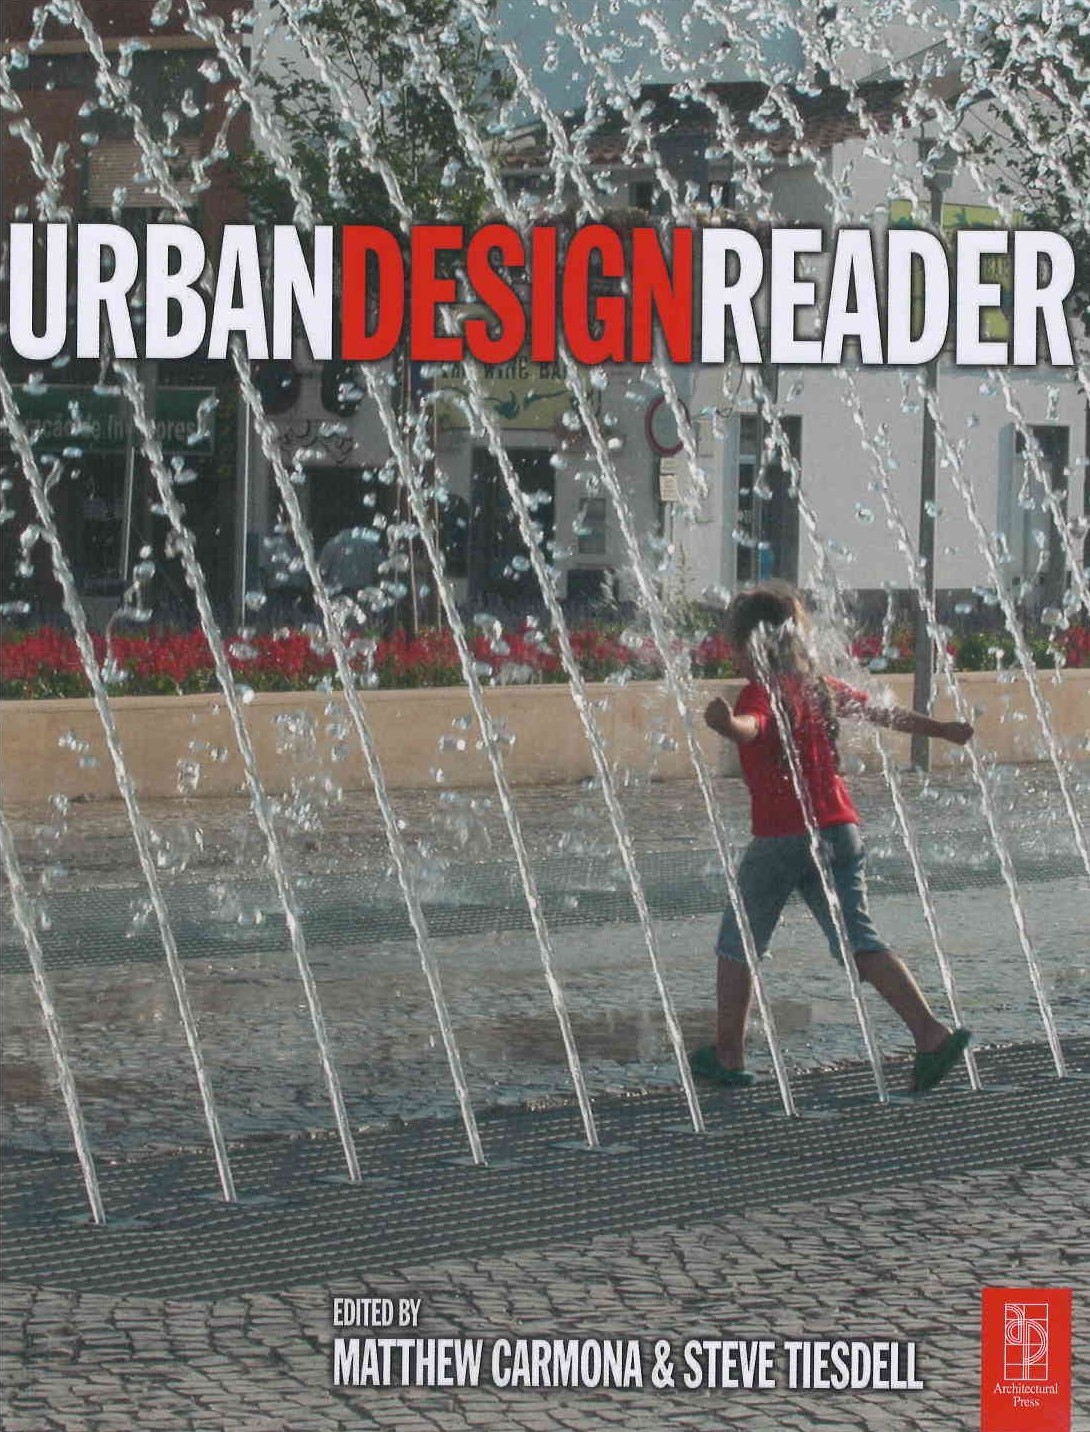 Urban design reader